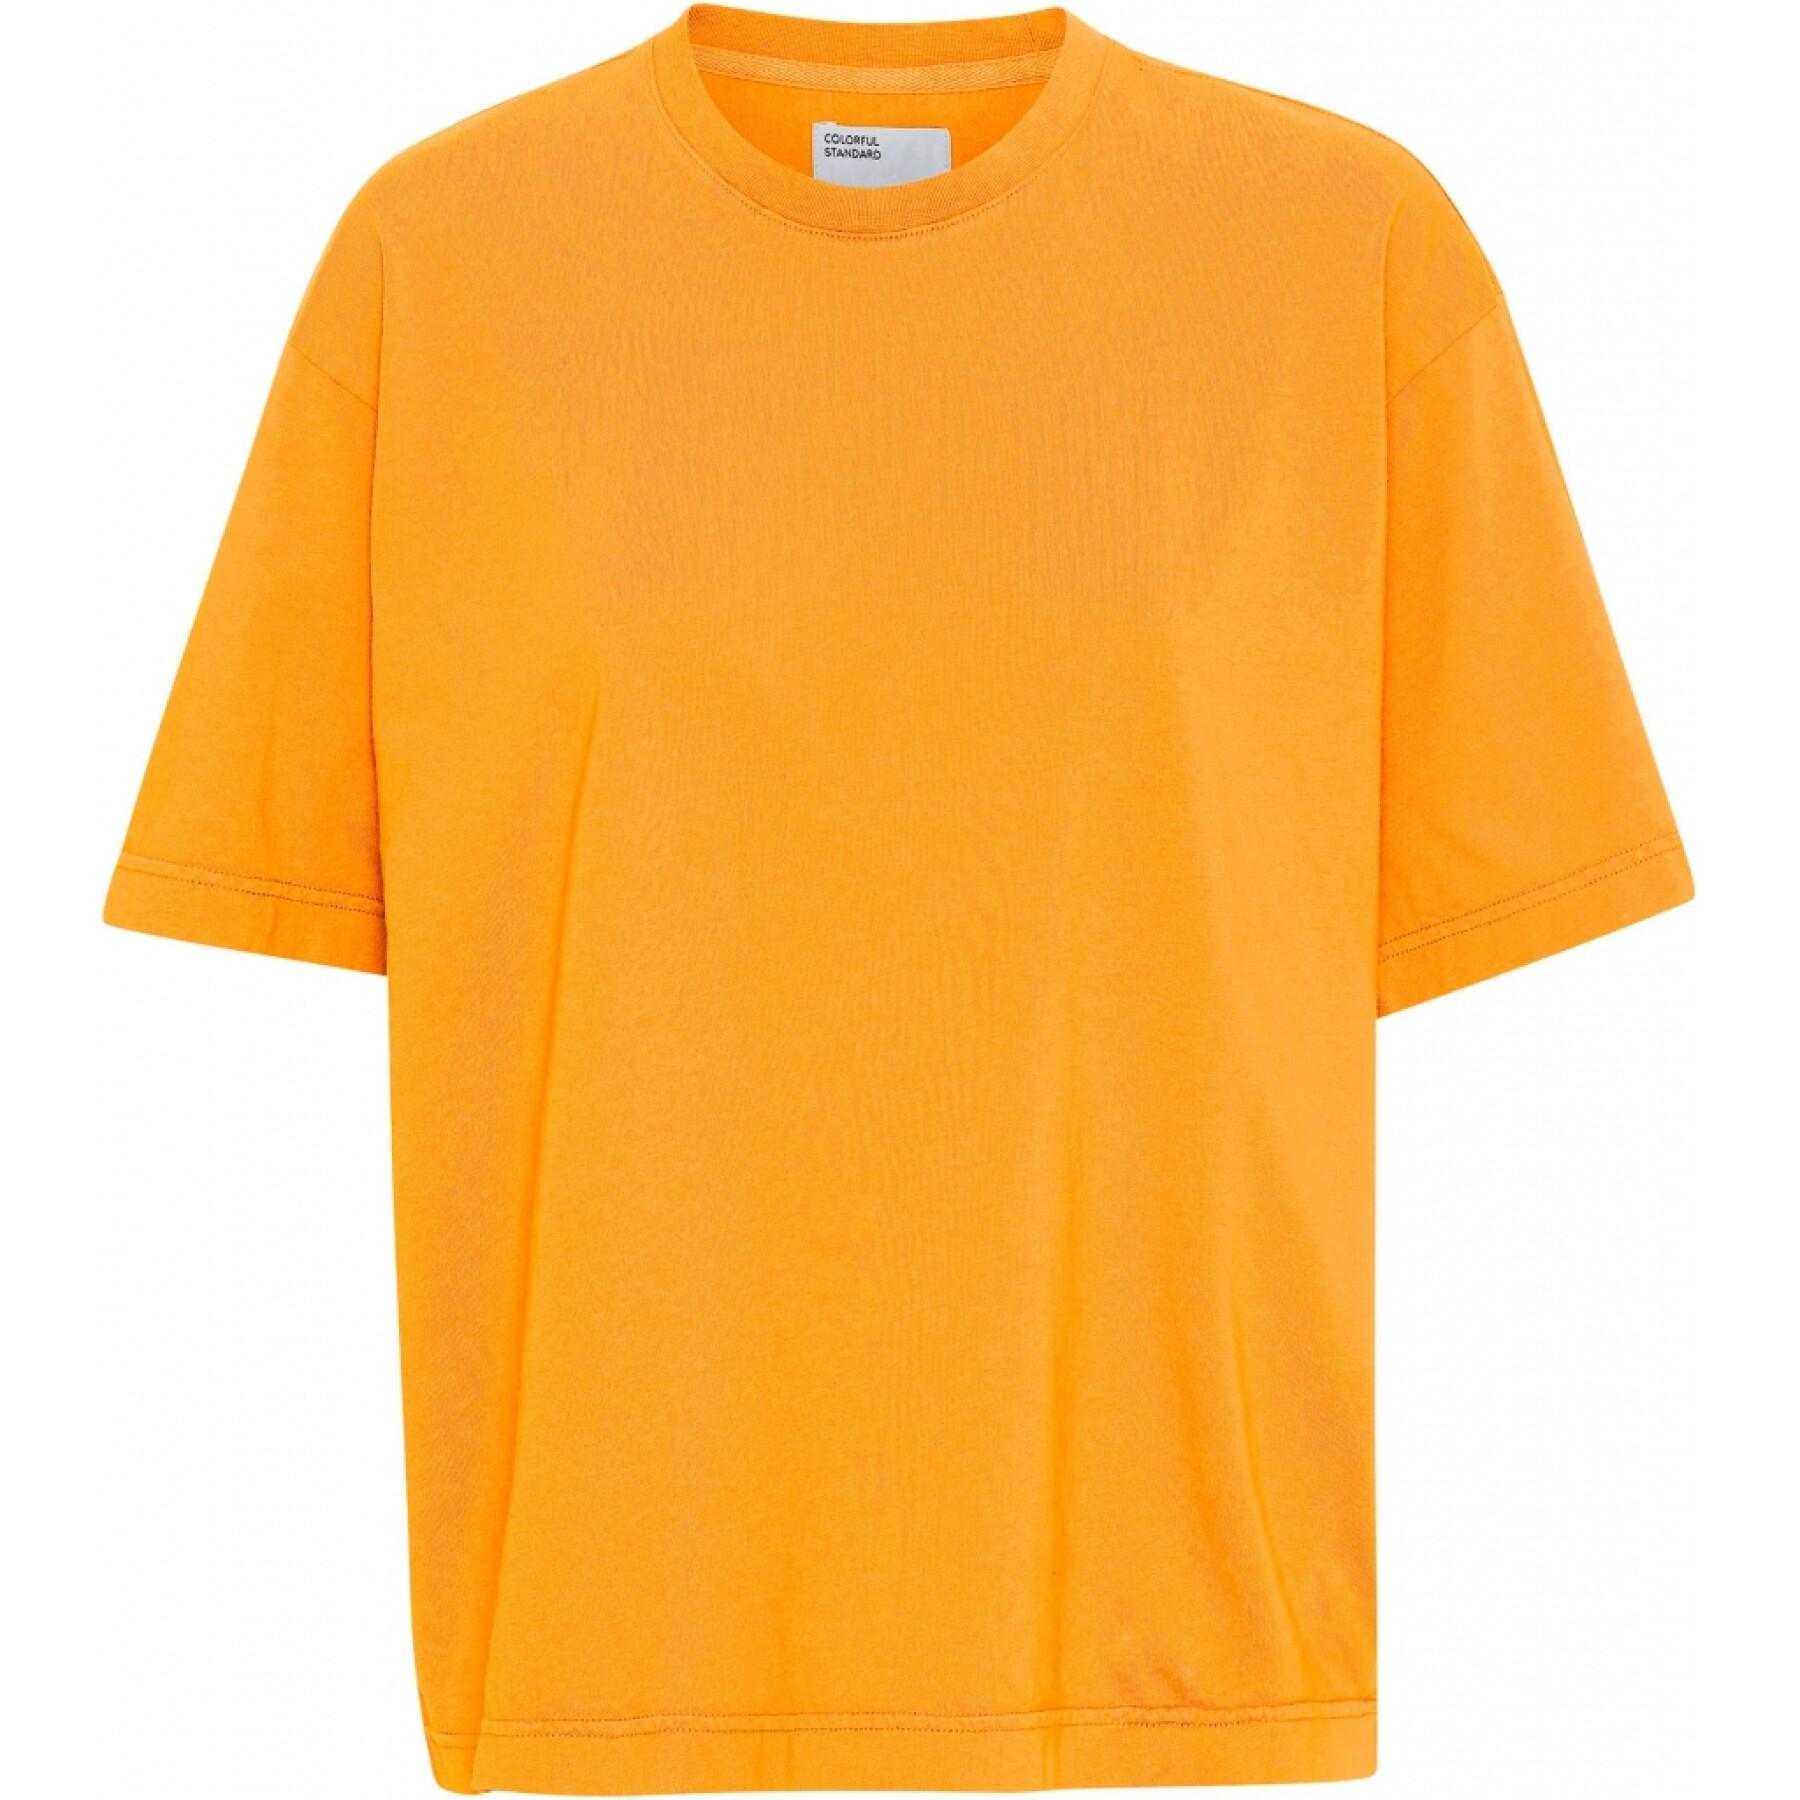 Camiseta feminina Colorful Standard Organic oversized sunny orange